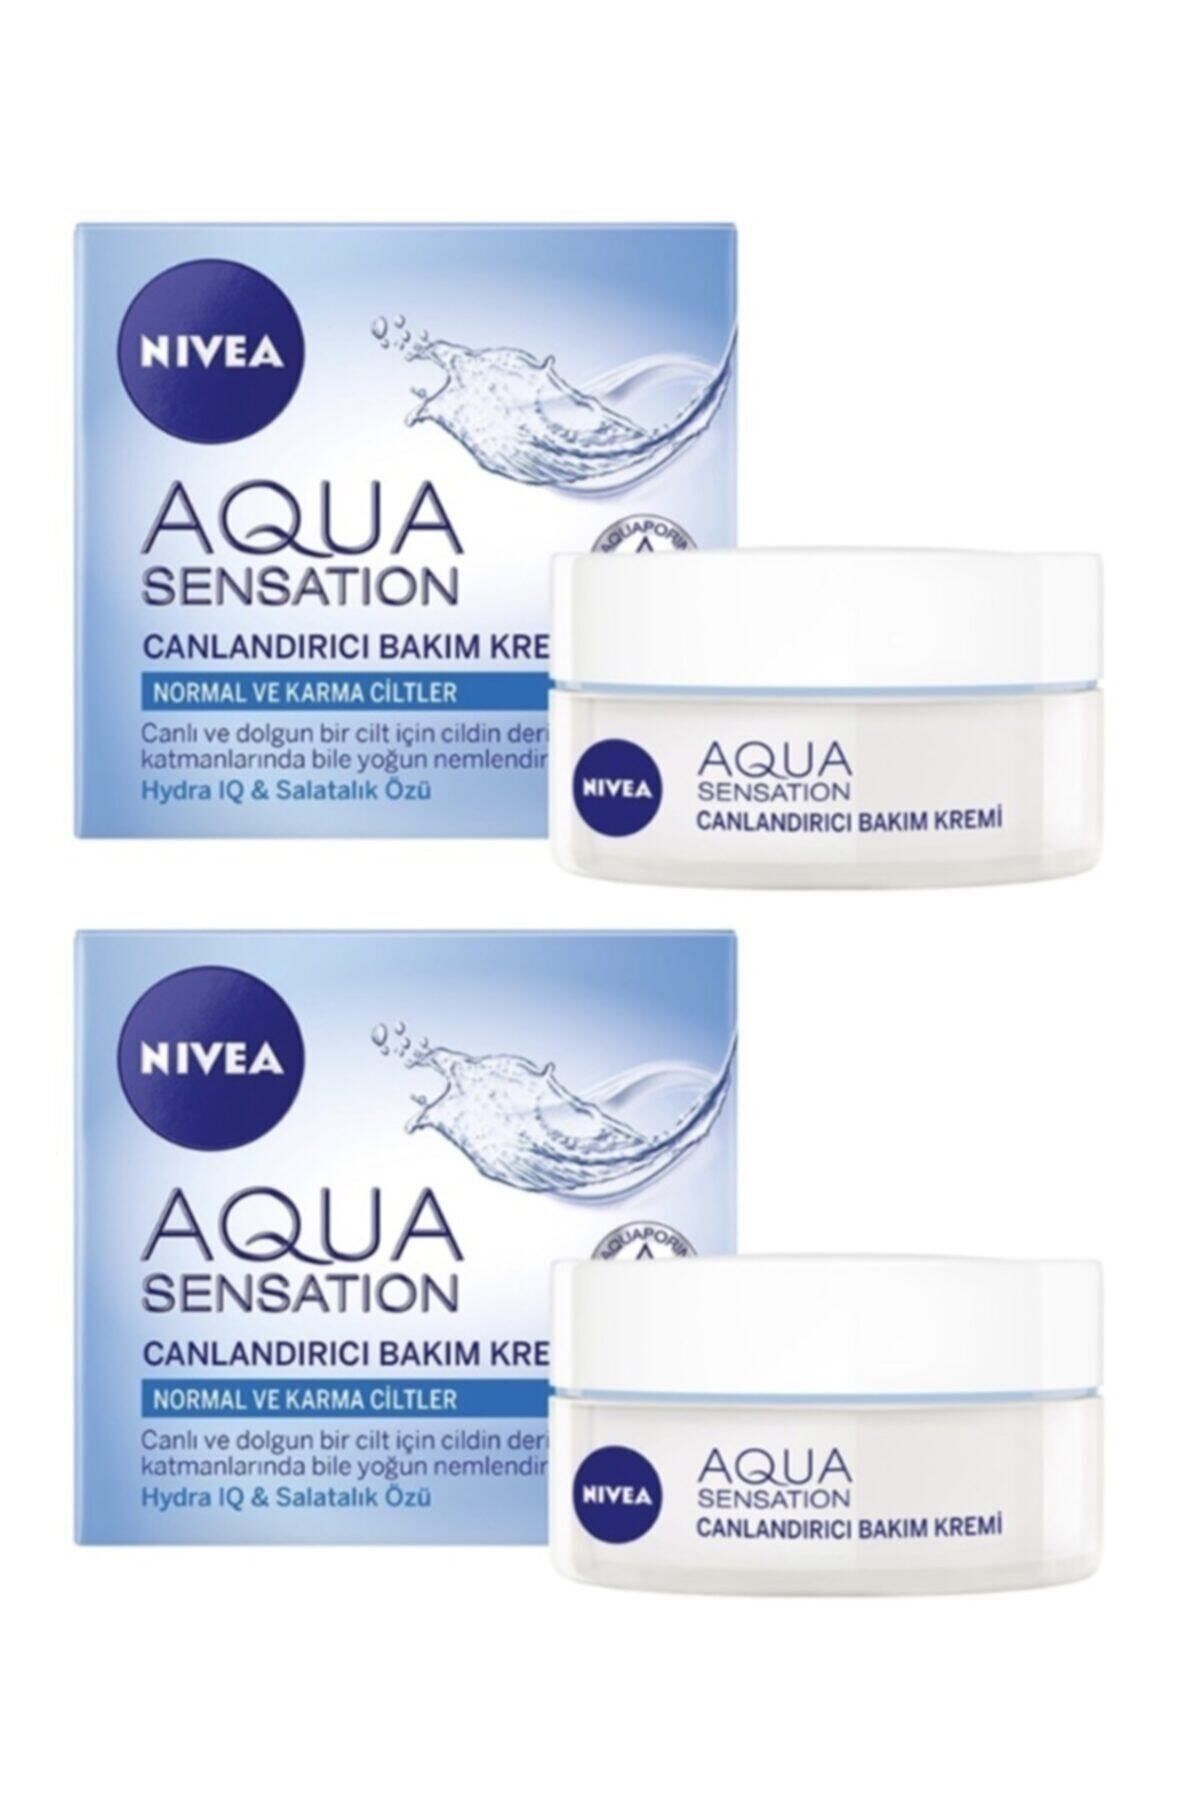 NIVEA Aqua Sensation Canlandırıcı Yüz Bakım Kremi 50 ml 2 Adet